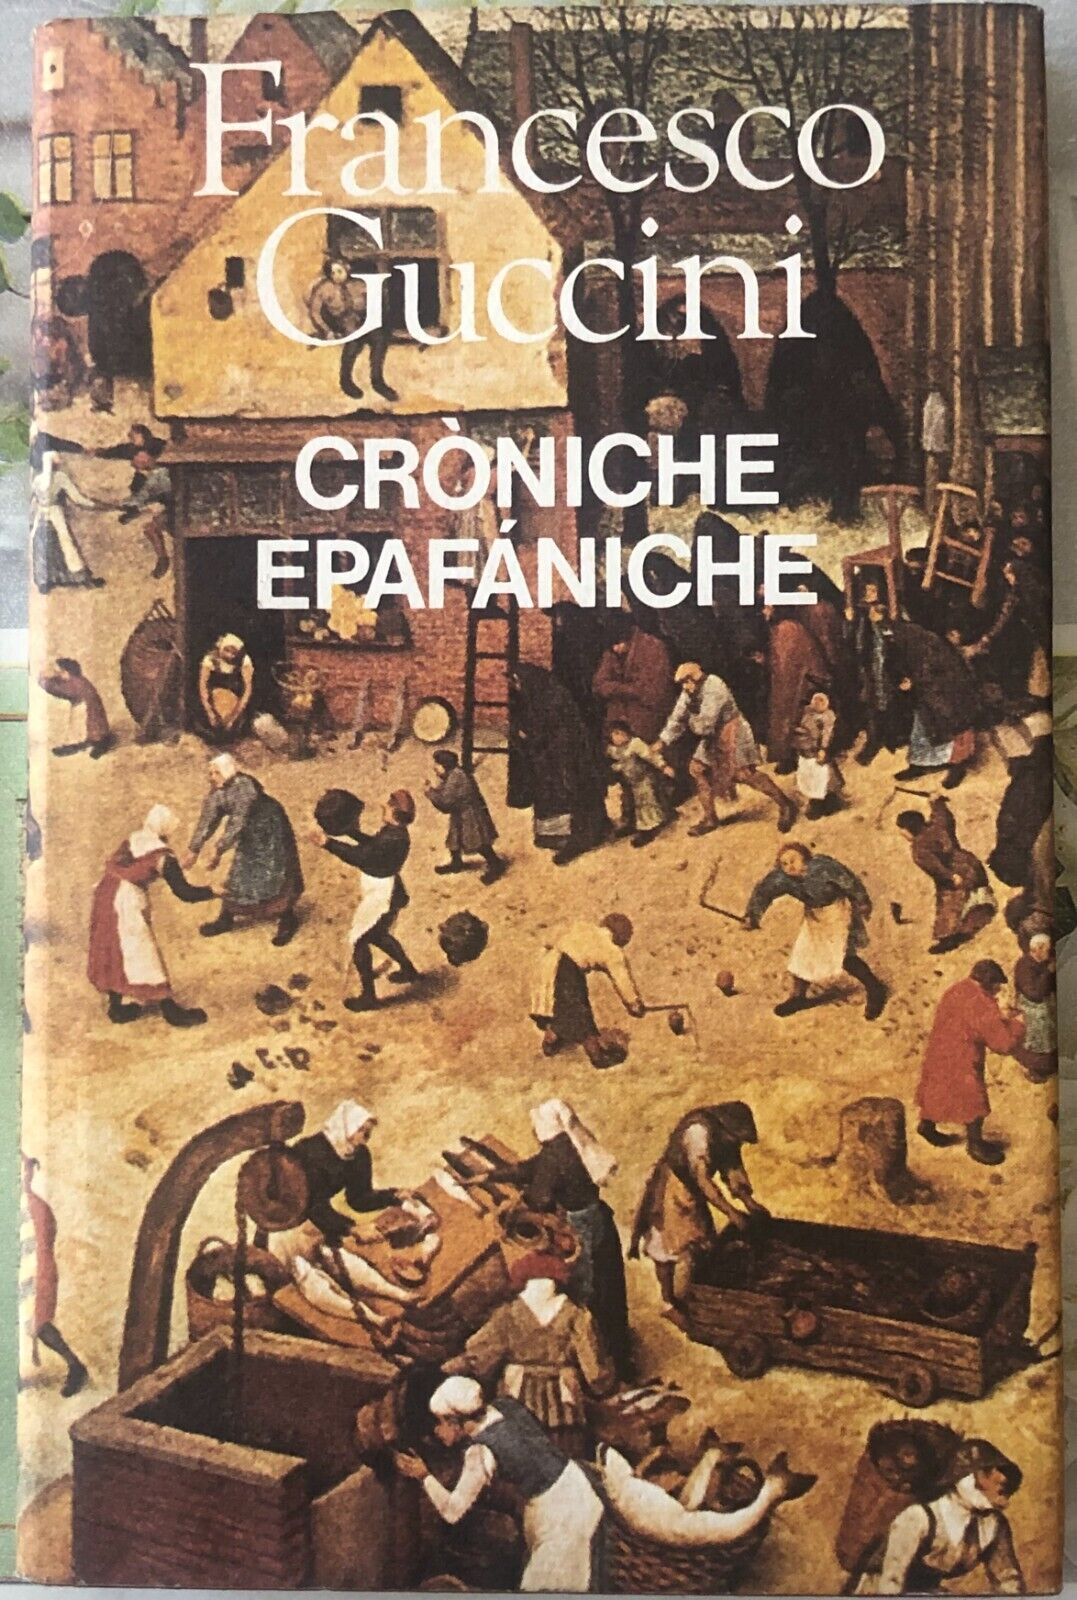 Cr?niche epaf?niche di Francesco Guccini,  1989,  Edizioni Cde